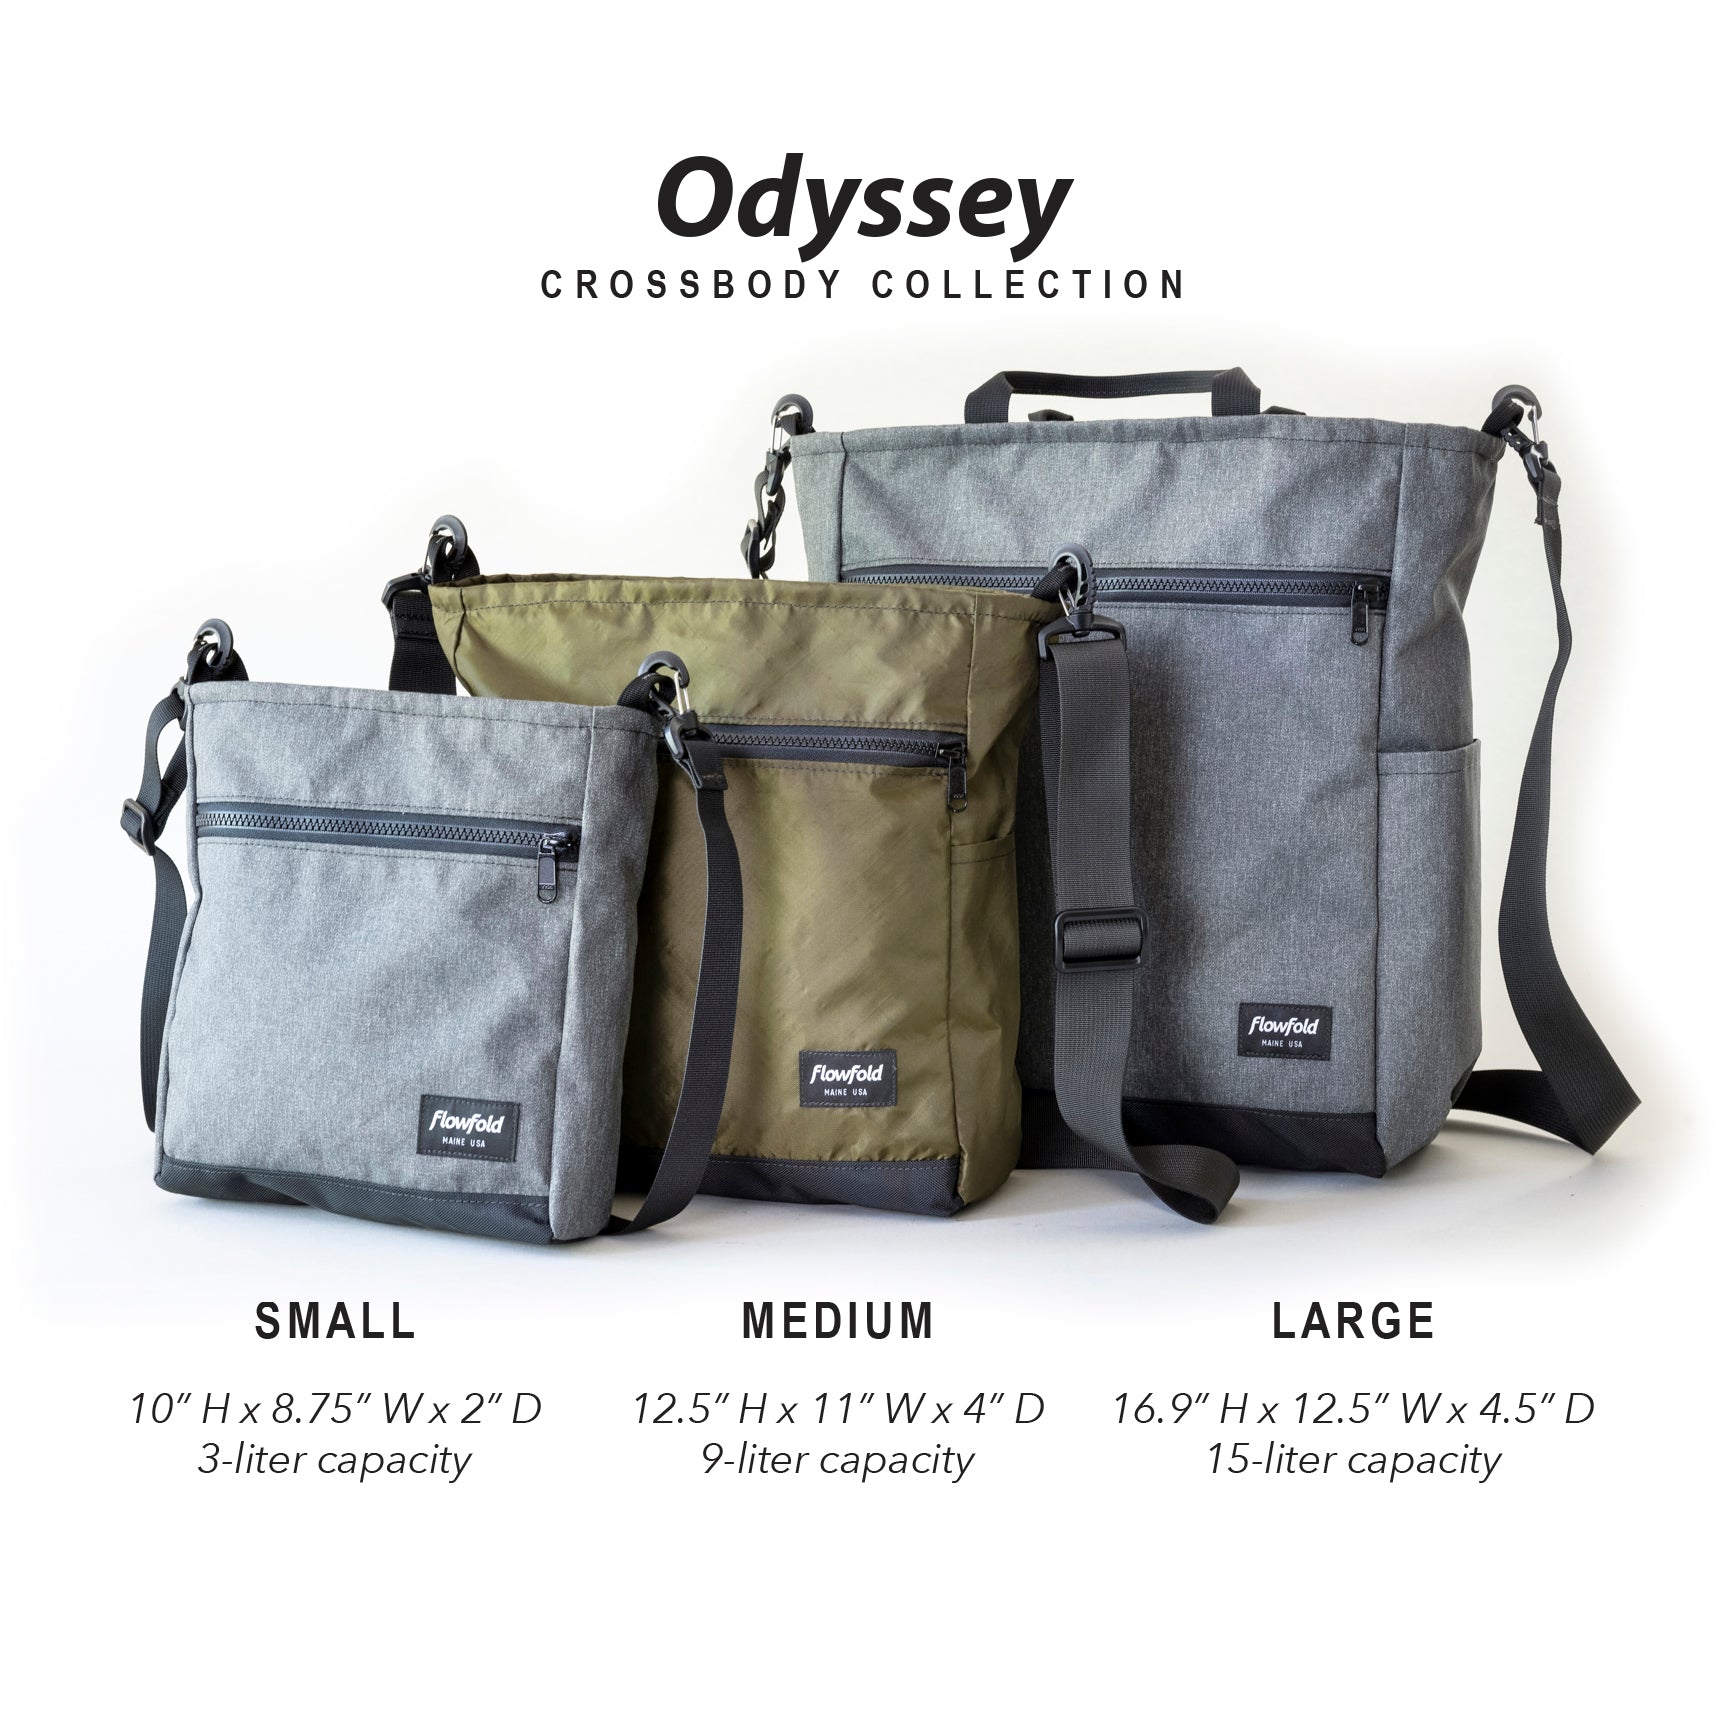 Flowfold Odyssey Crossbody Bag 9L - Medium Day Satchel